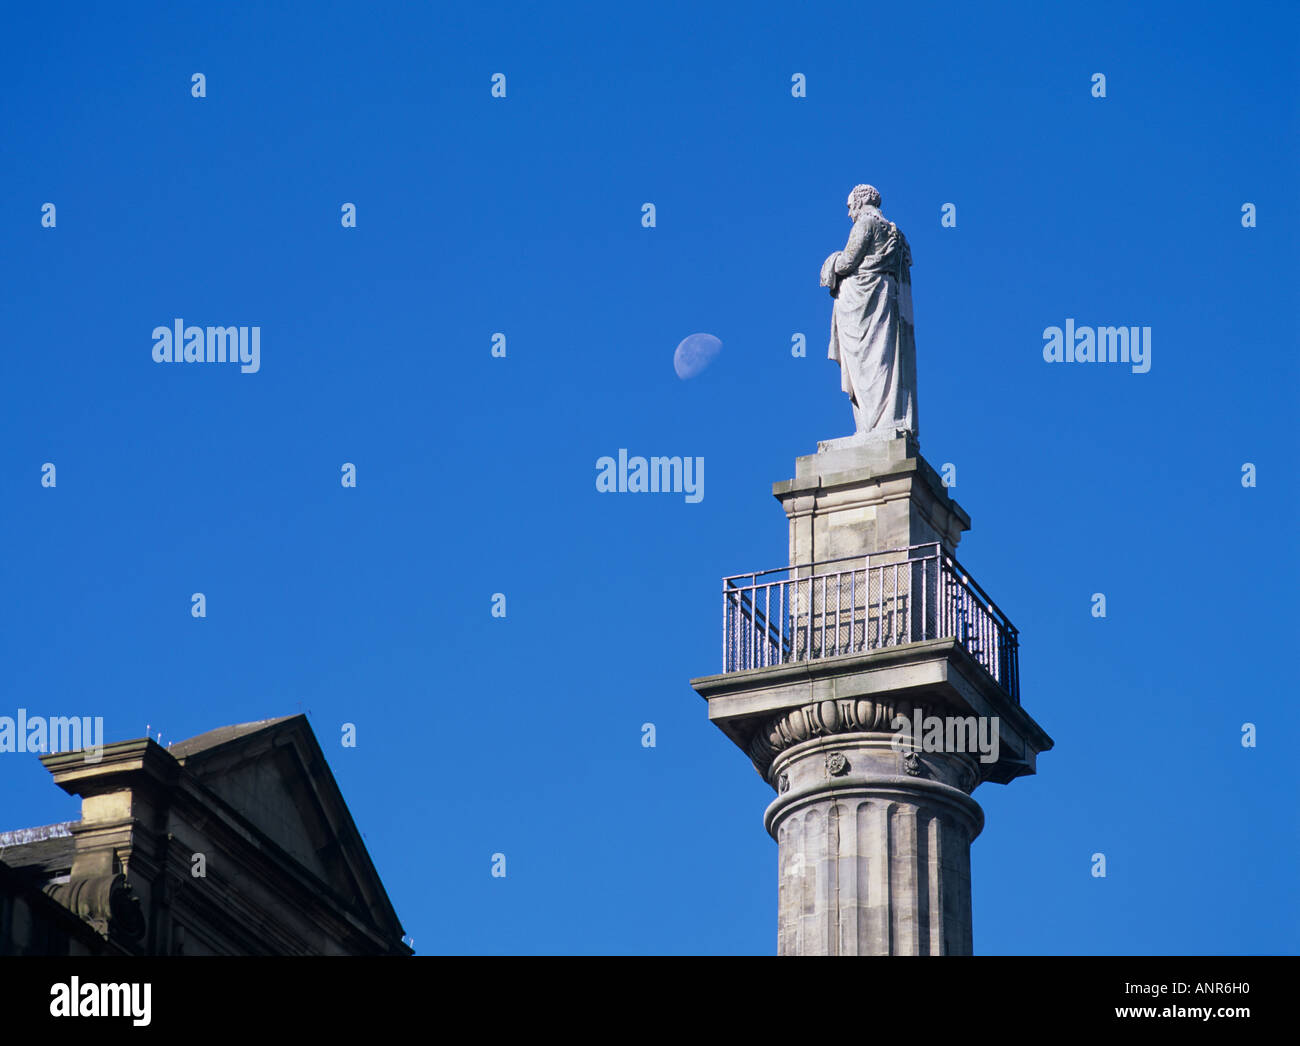 Grays Monument du centre-ville de Newcastle Upon Tyne, Tyne et Wear, Angleterre, Royaume-Uni. Illustré avec la lune Banque D'Images